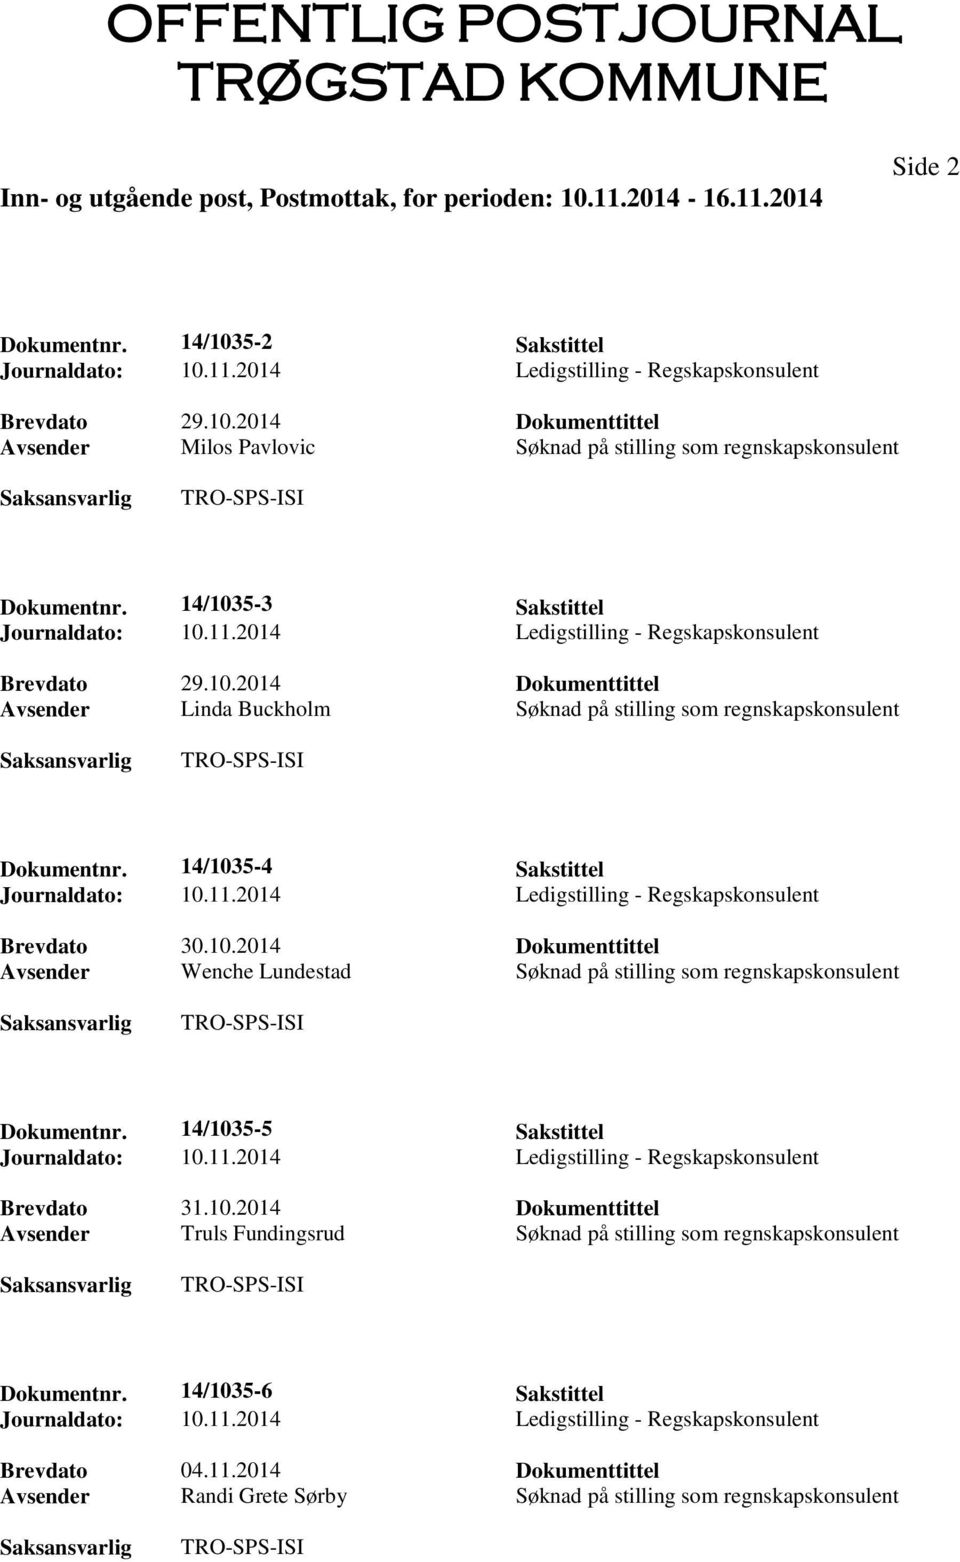 14/1035-5 Sakstittel Brevdato 31.10.2014 Dokumenttittel Avsender Truls Fundingsrud Søknad på stilling som regnskapskonsulent Dokumentnr. 14/1035-6 Sakstittel Brevdato 04.